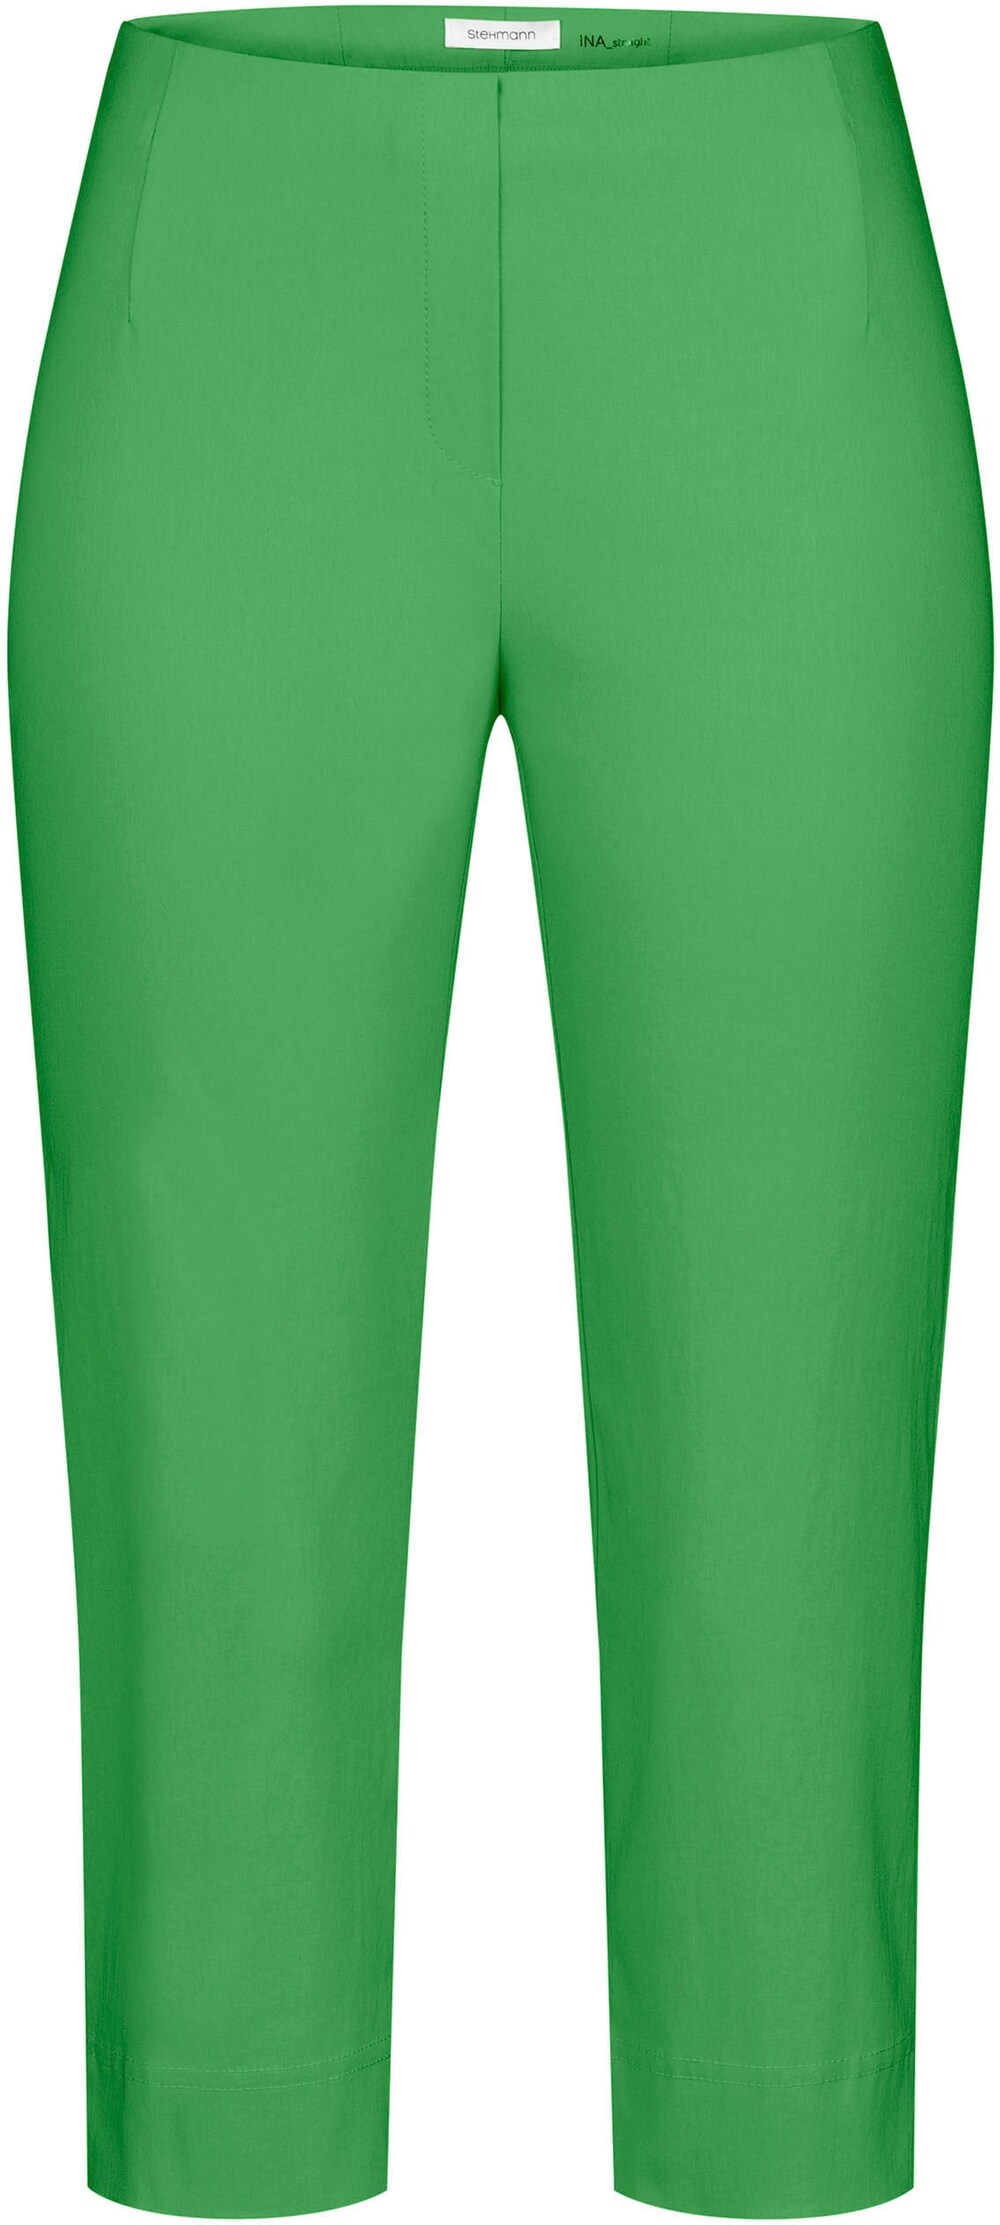 Узкие брюки Stehmann Ina, трава зеленая одинокая кукушка зеленая трава